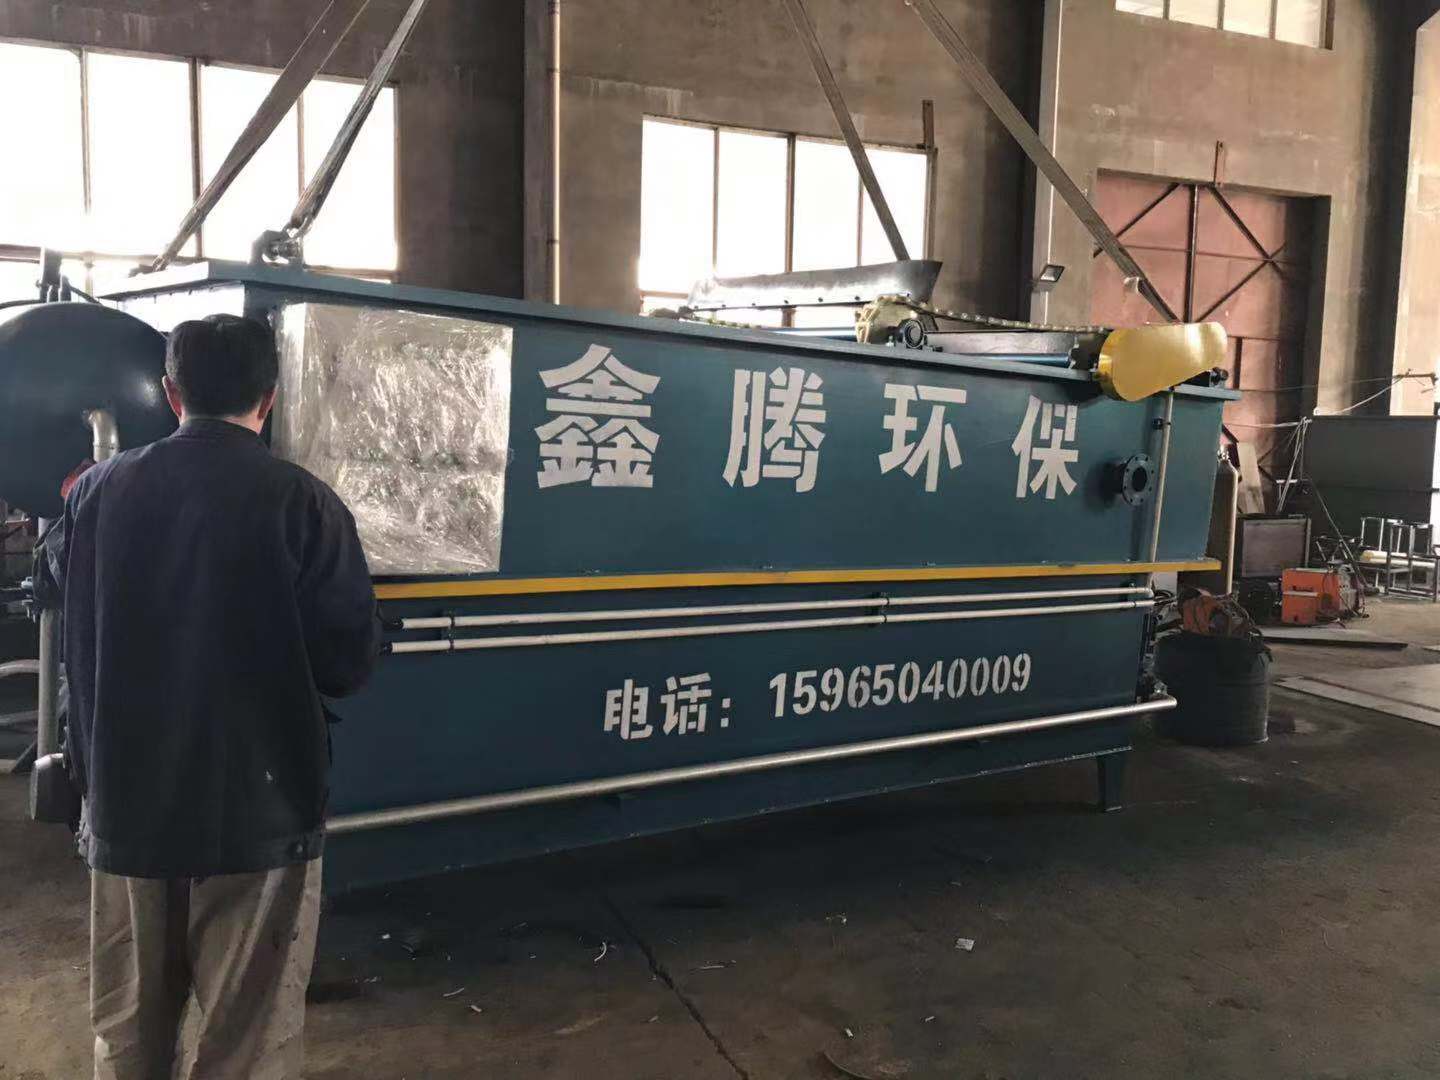 潍坊市织布厂污水处理设备气浮沉淀一体机厂家专业生产织布厂污水处理设备气浮沉淀一体机